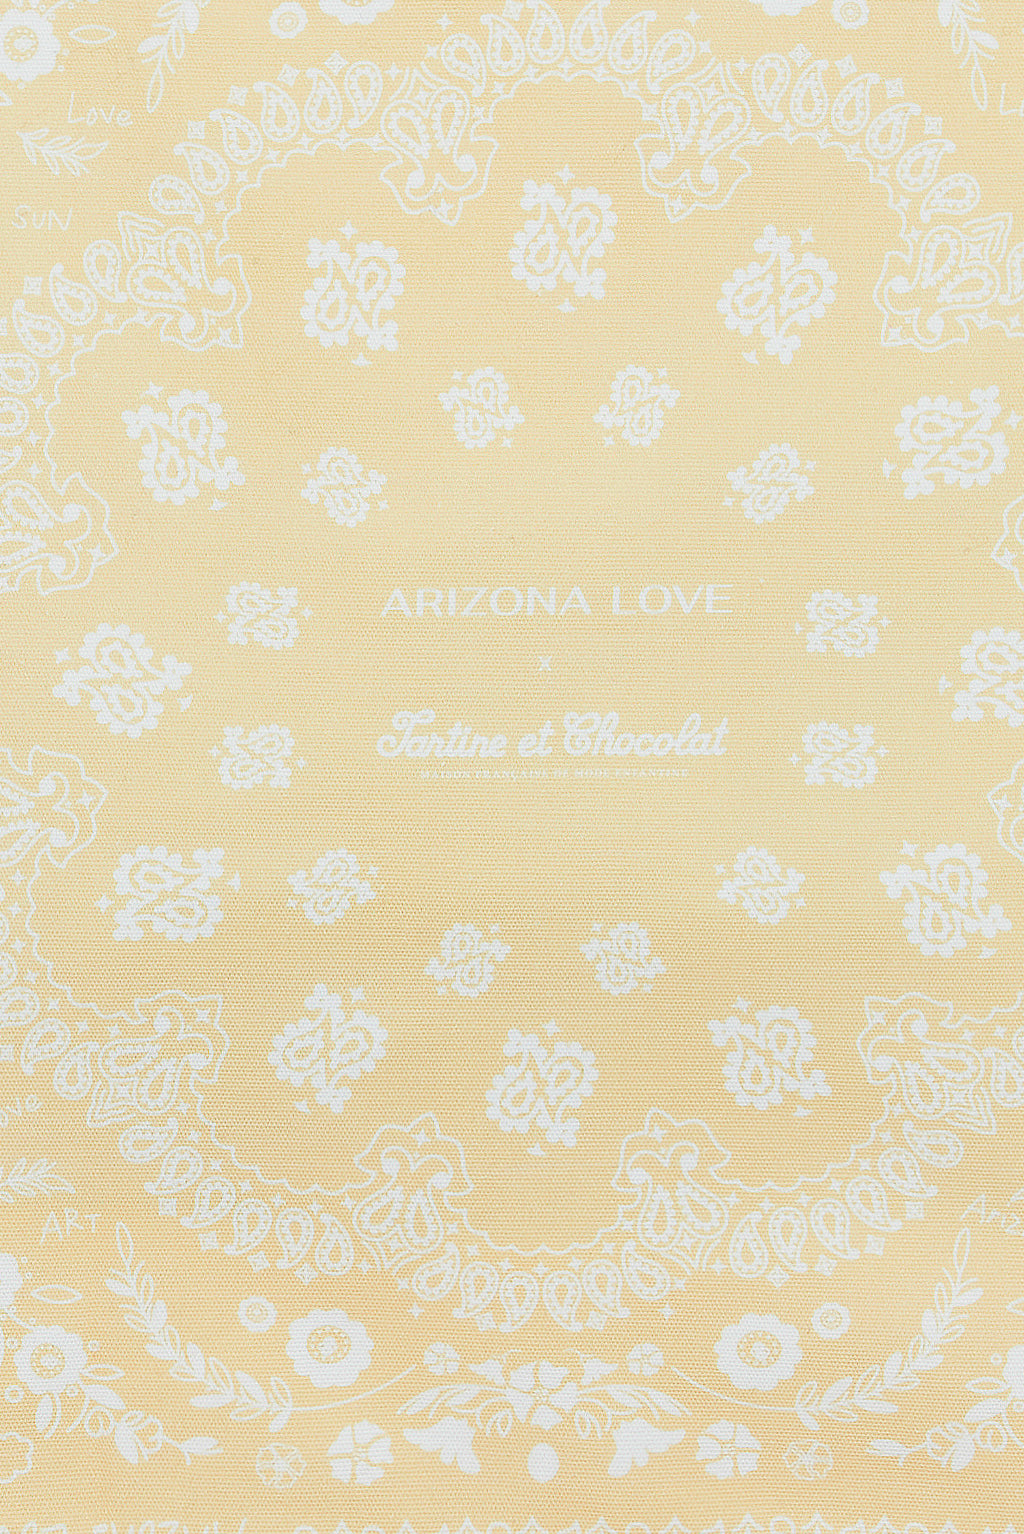 Tragetasche Gelb - Arizona Love x Tartine et Chocolat